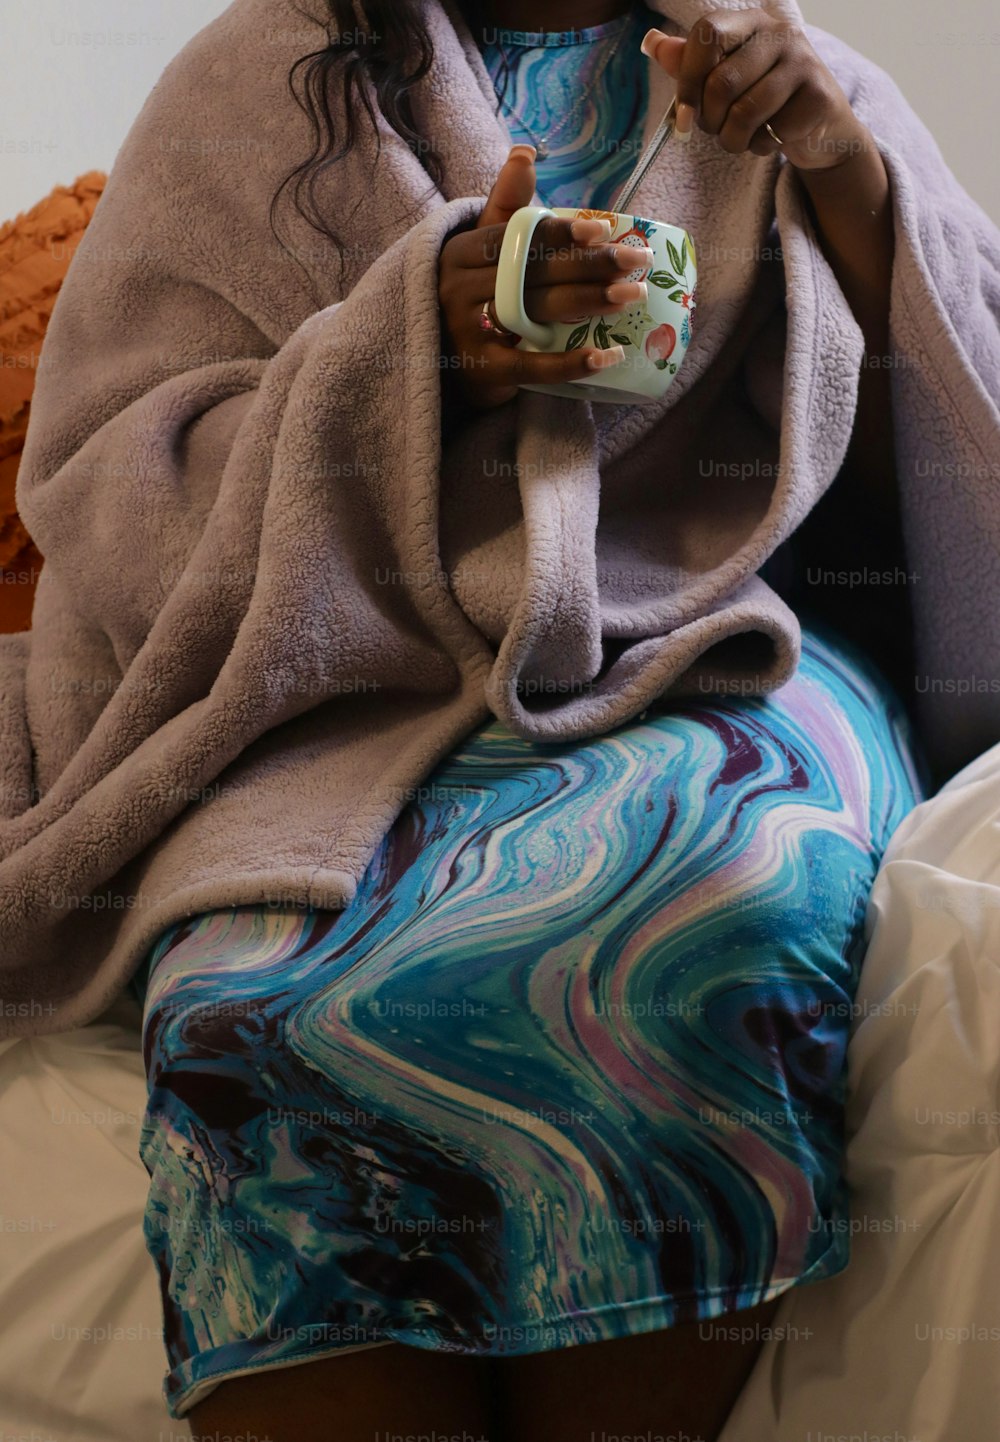 Una mujer sentada en una cama sosteniendo una taza de café